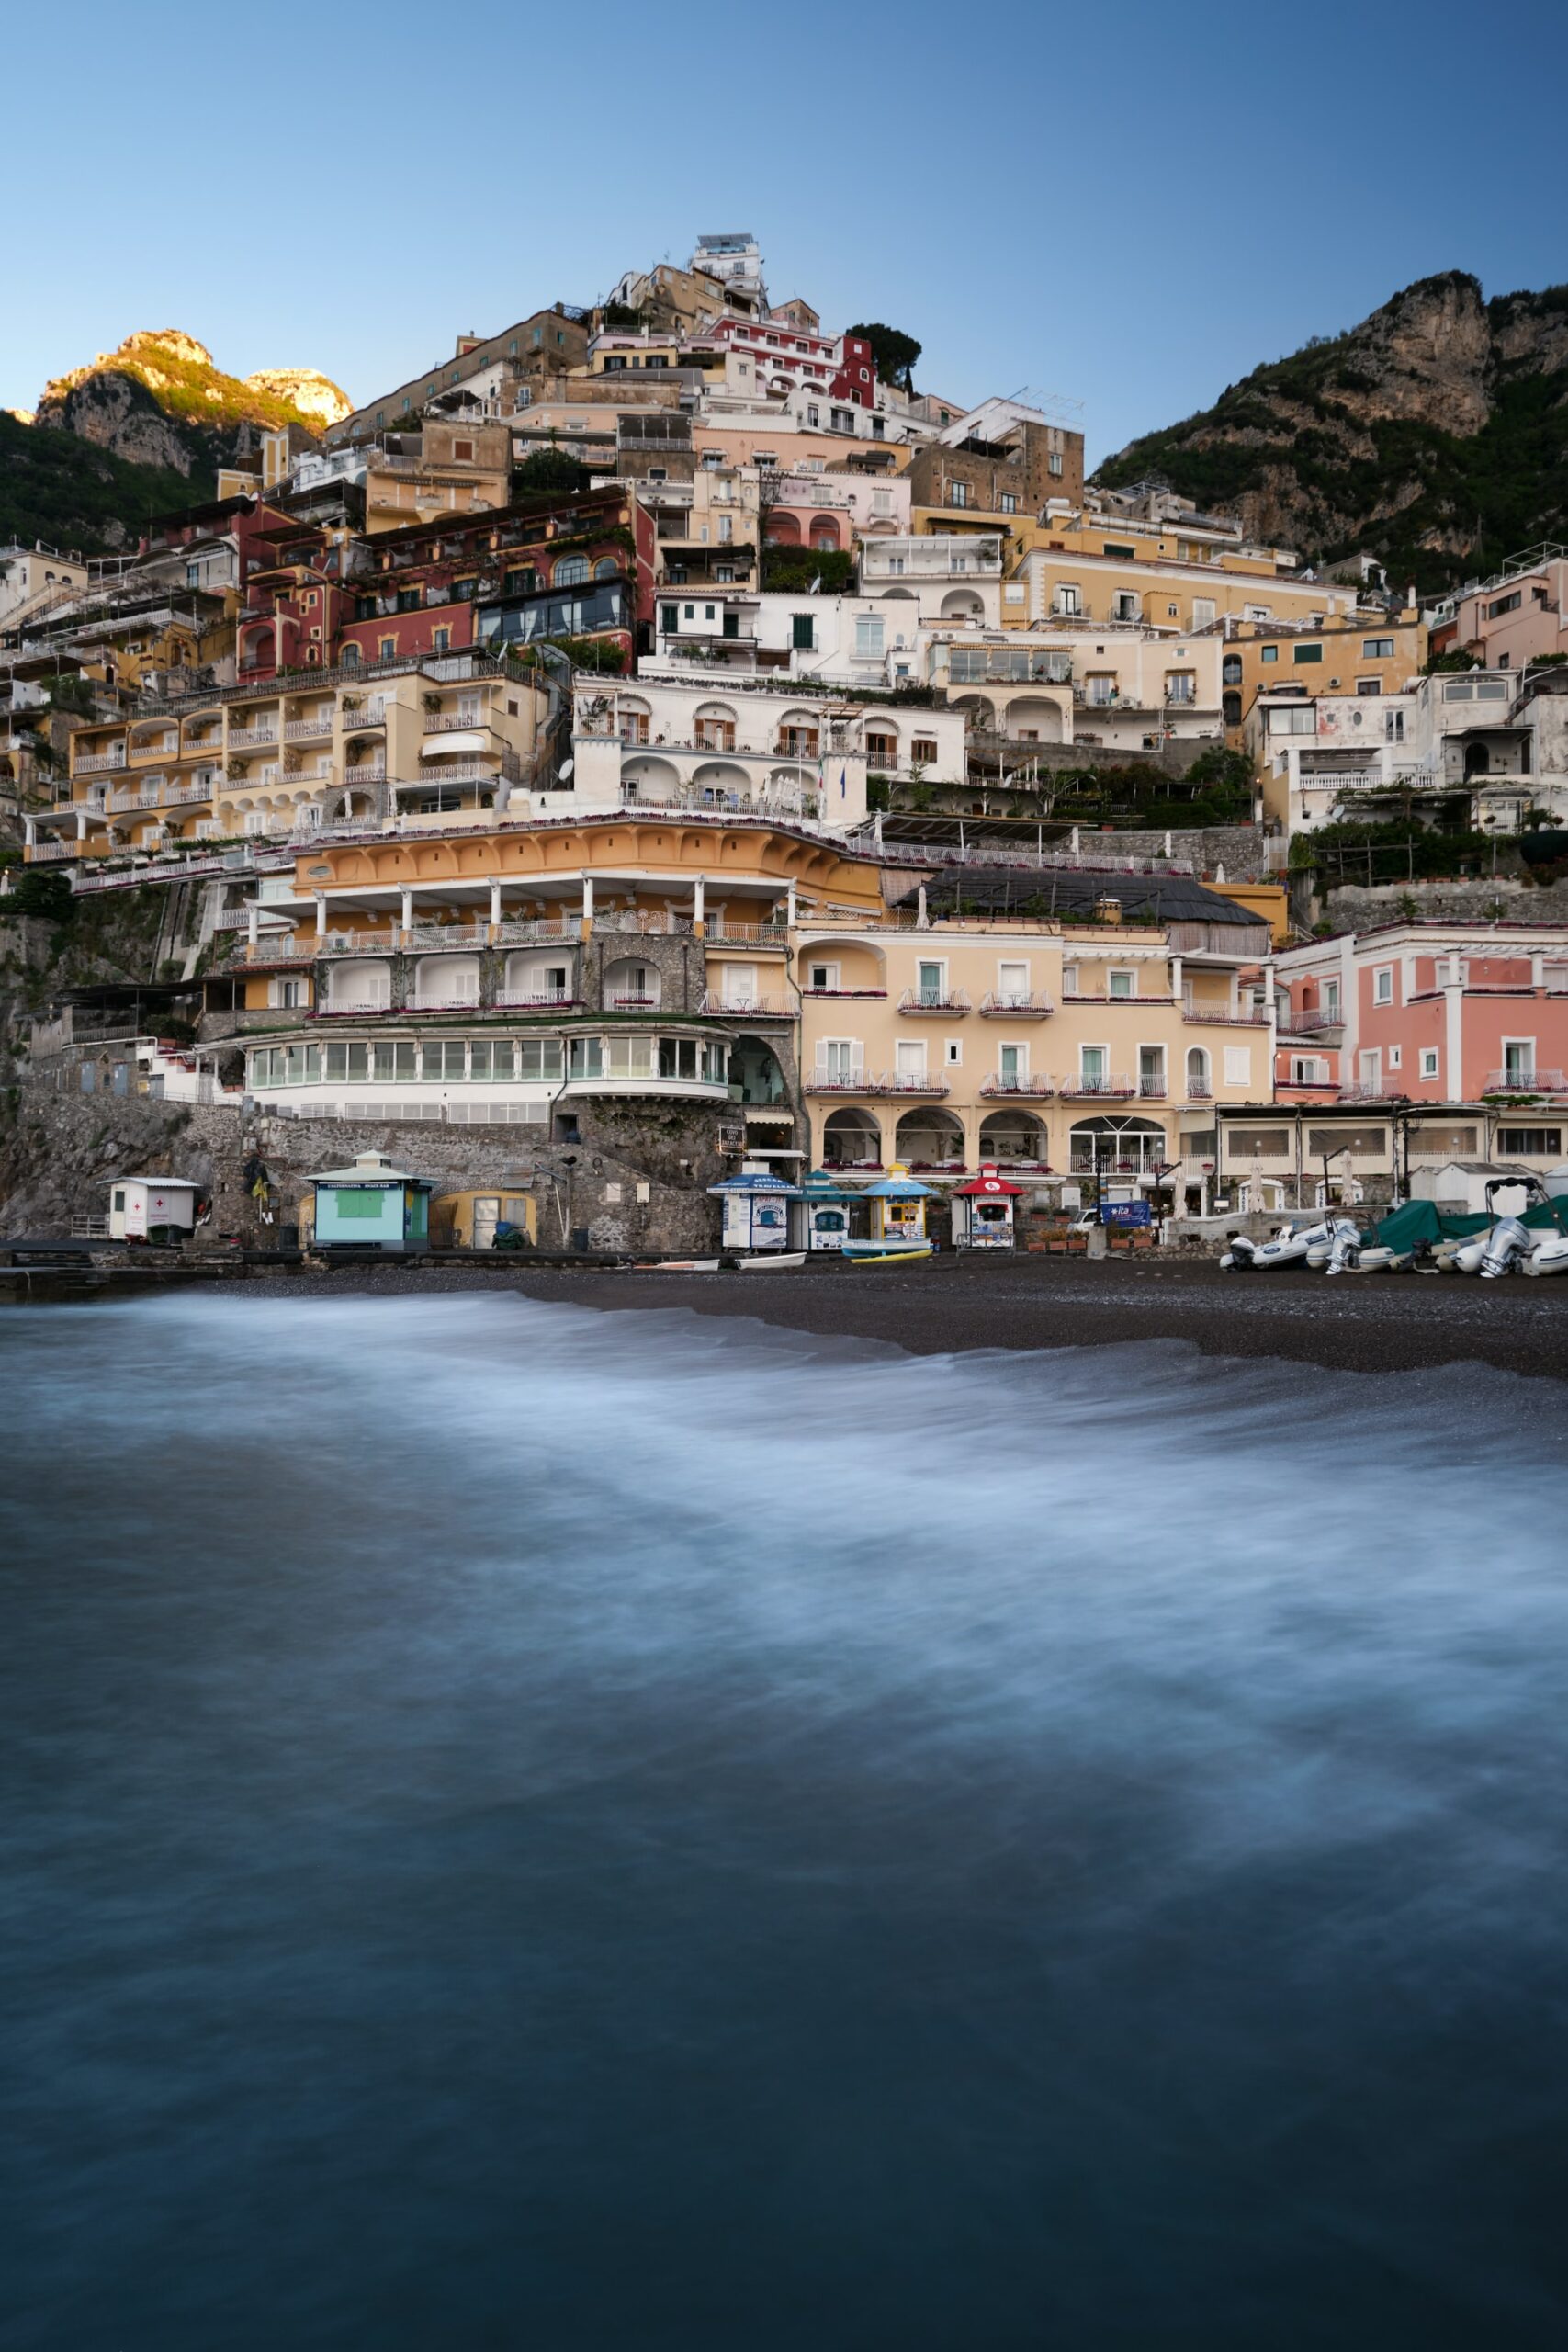 Amalfi Coast 5 day itinerary